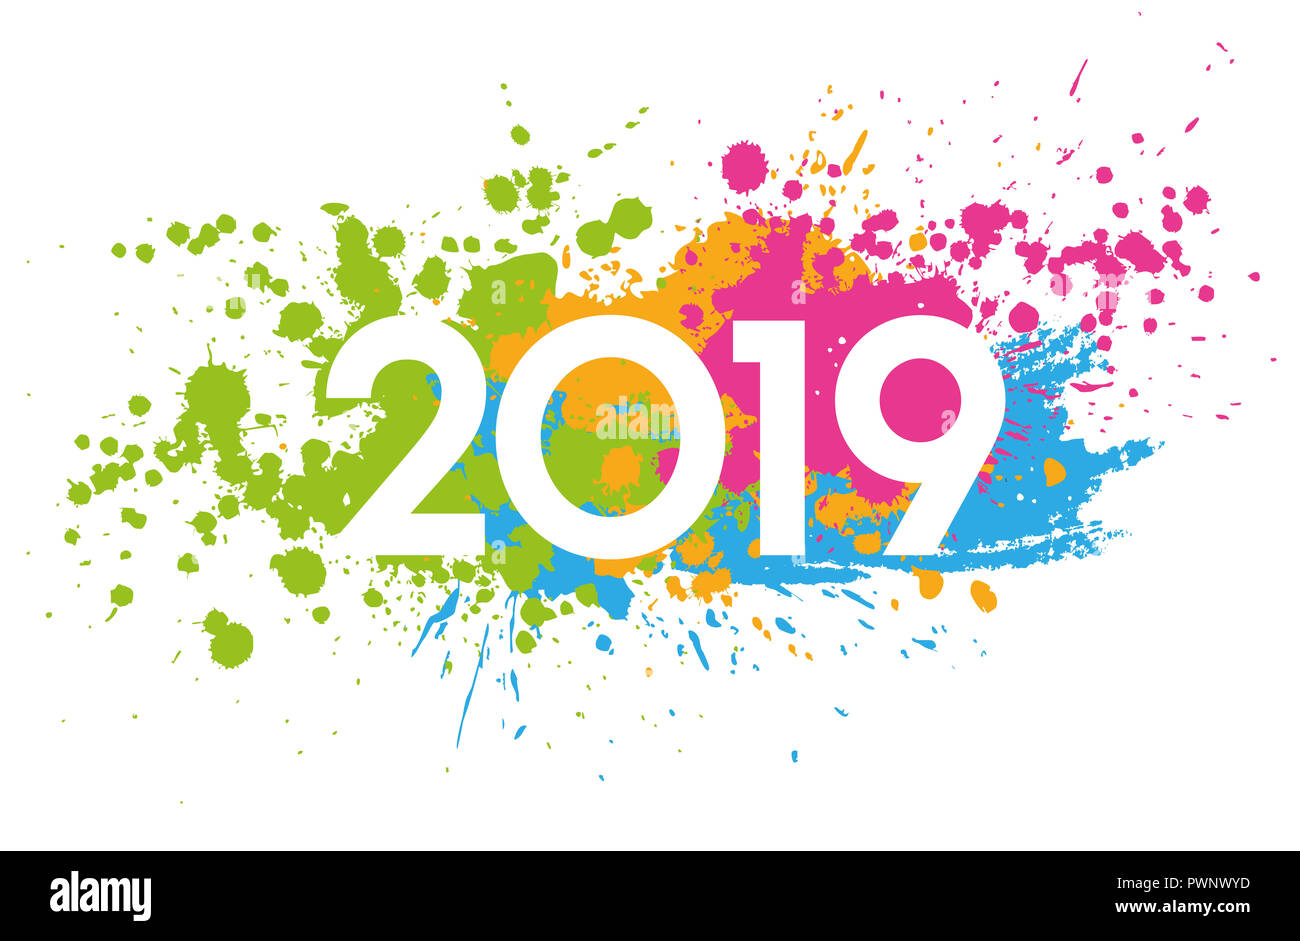 Neues Jahr 2019 Datum mit bunten Flecken bemalt Stockfoto